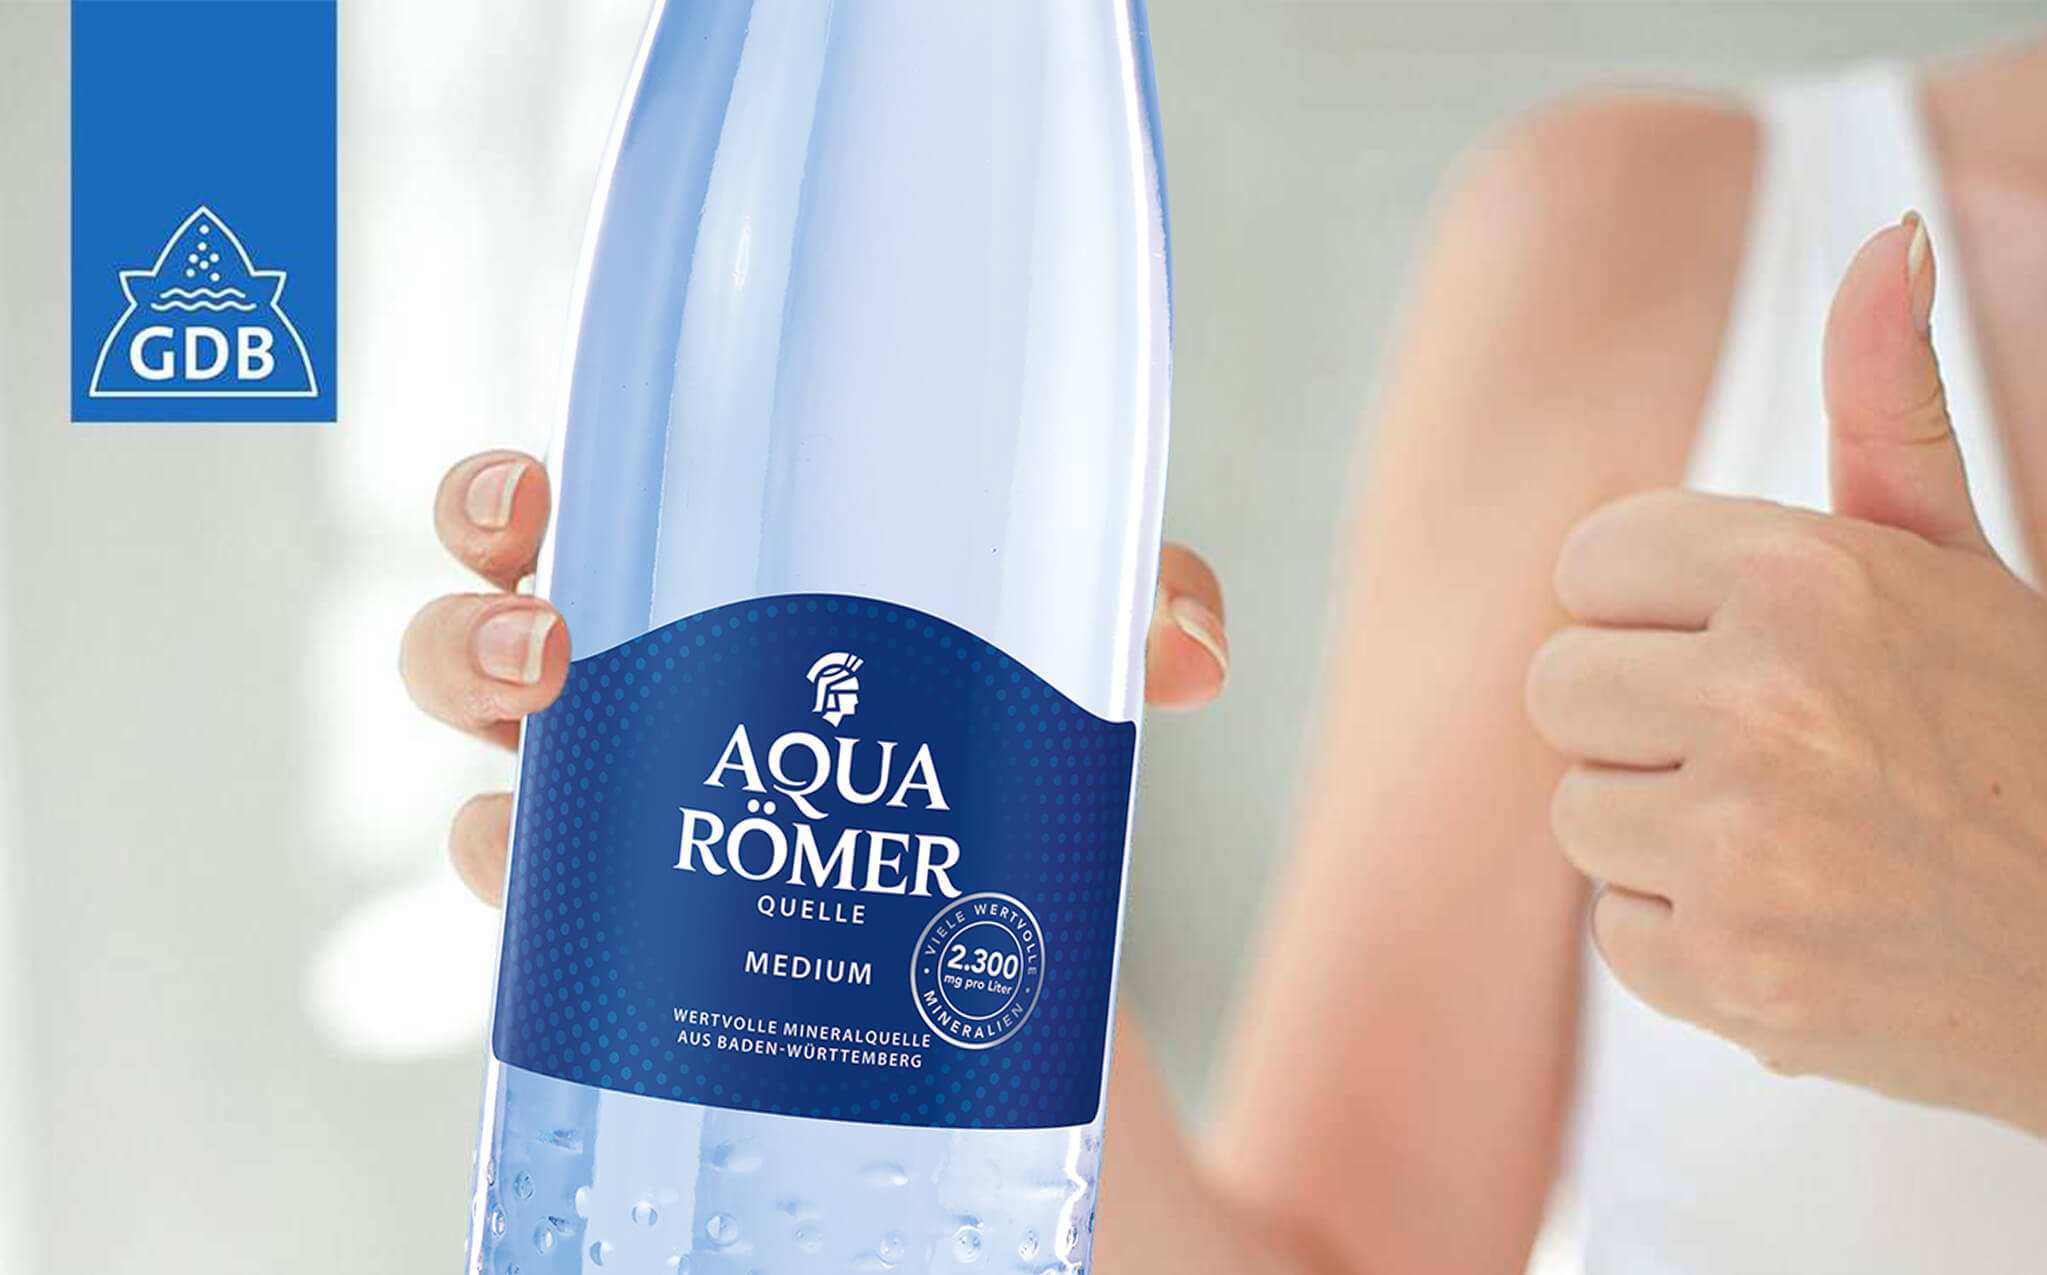 Aqua Römer Quelle in der neuen GDB Flasche